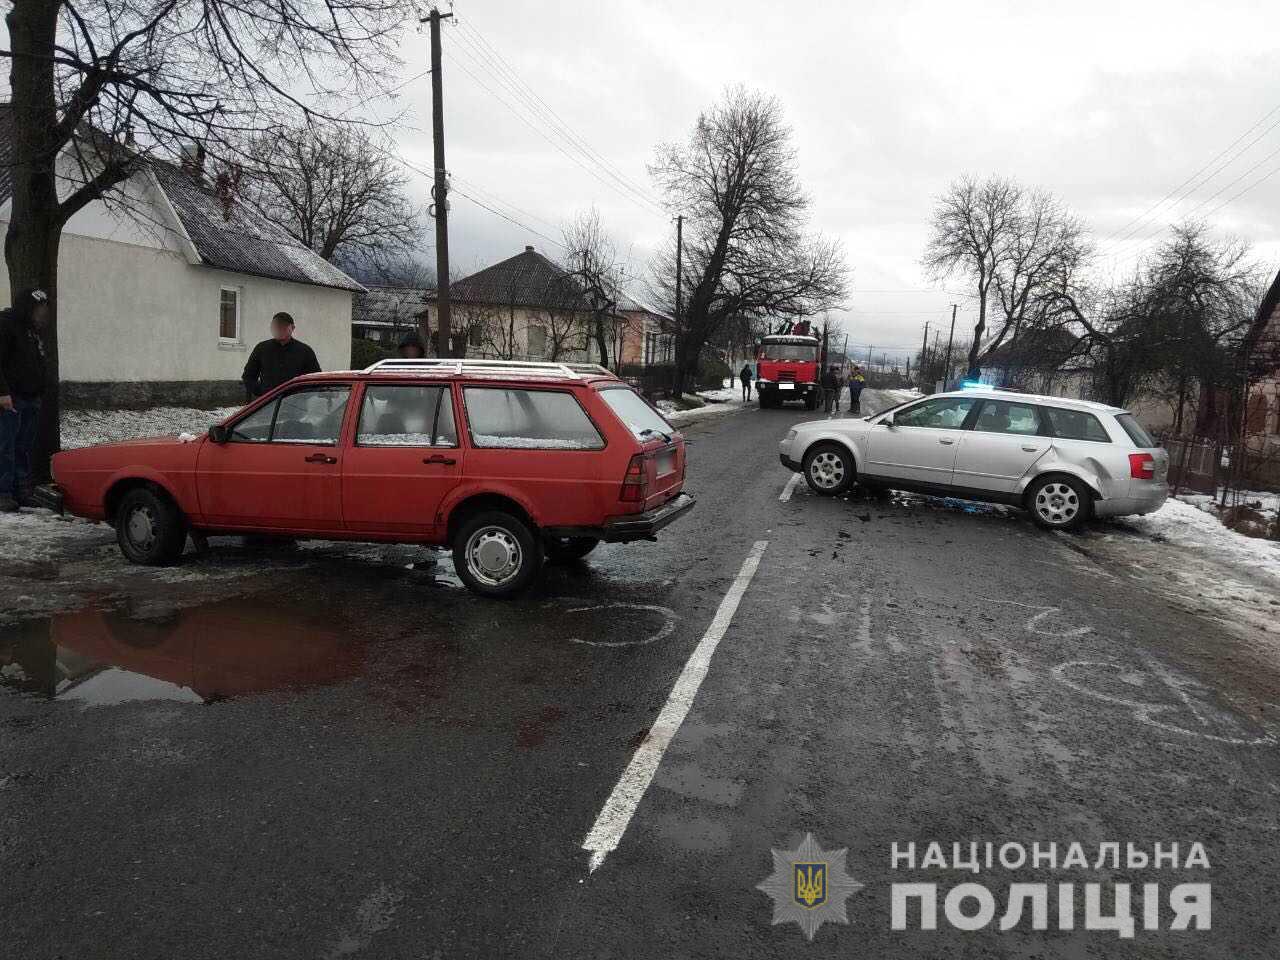  У селі Раково Перечинського району сталася незначна ДТП: на дорозі не розминулися автомобілі «Volkswagen Pаssаt» і «Аudі». 